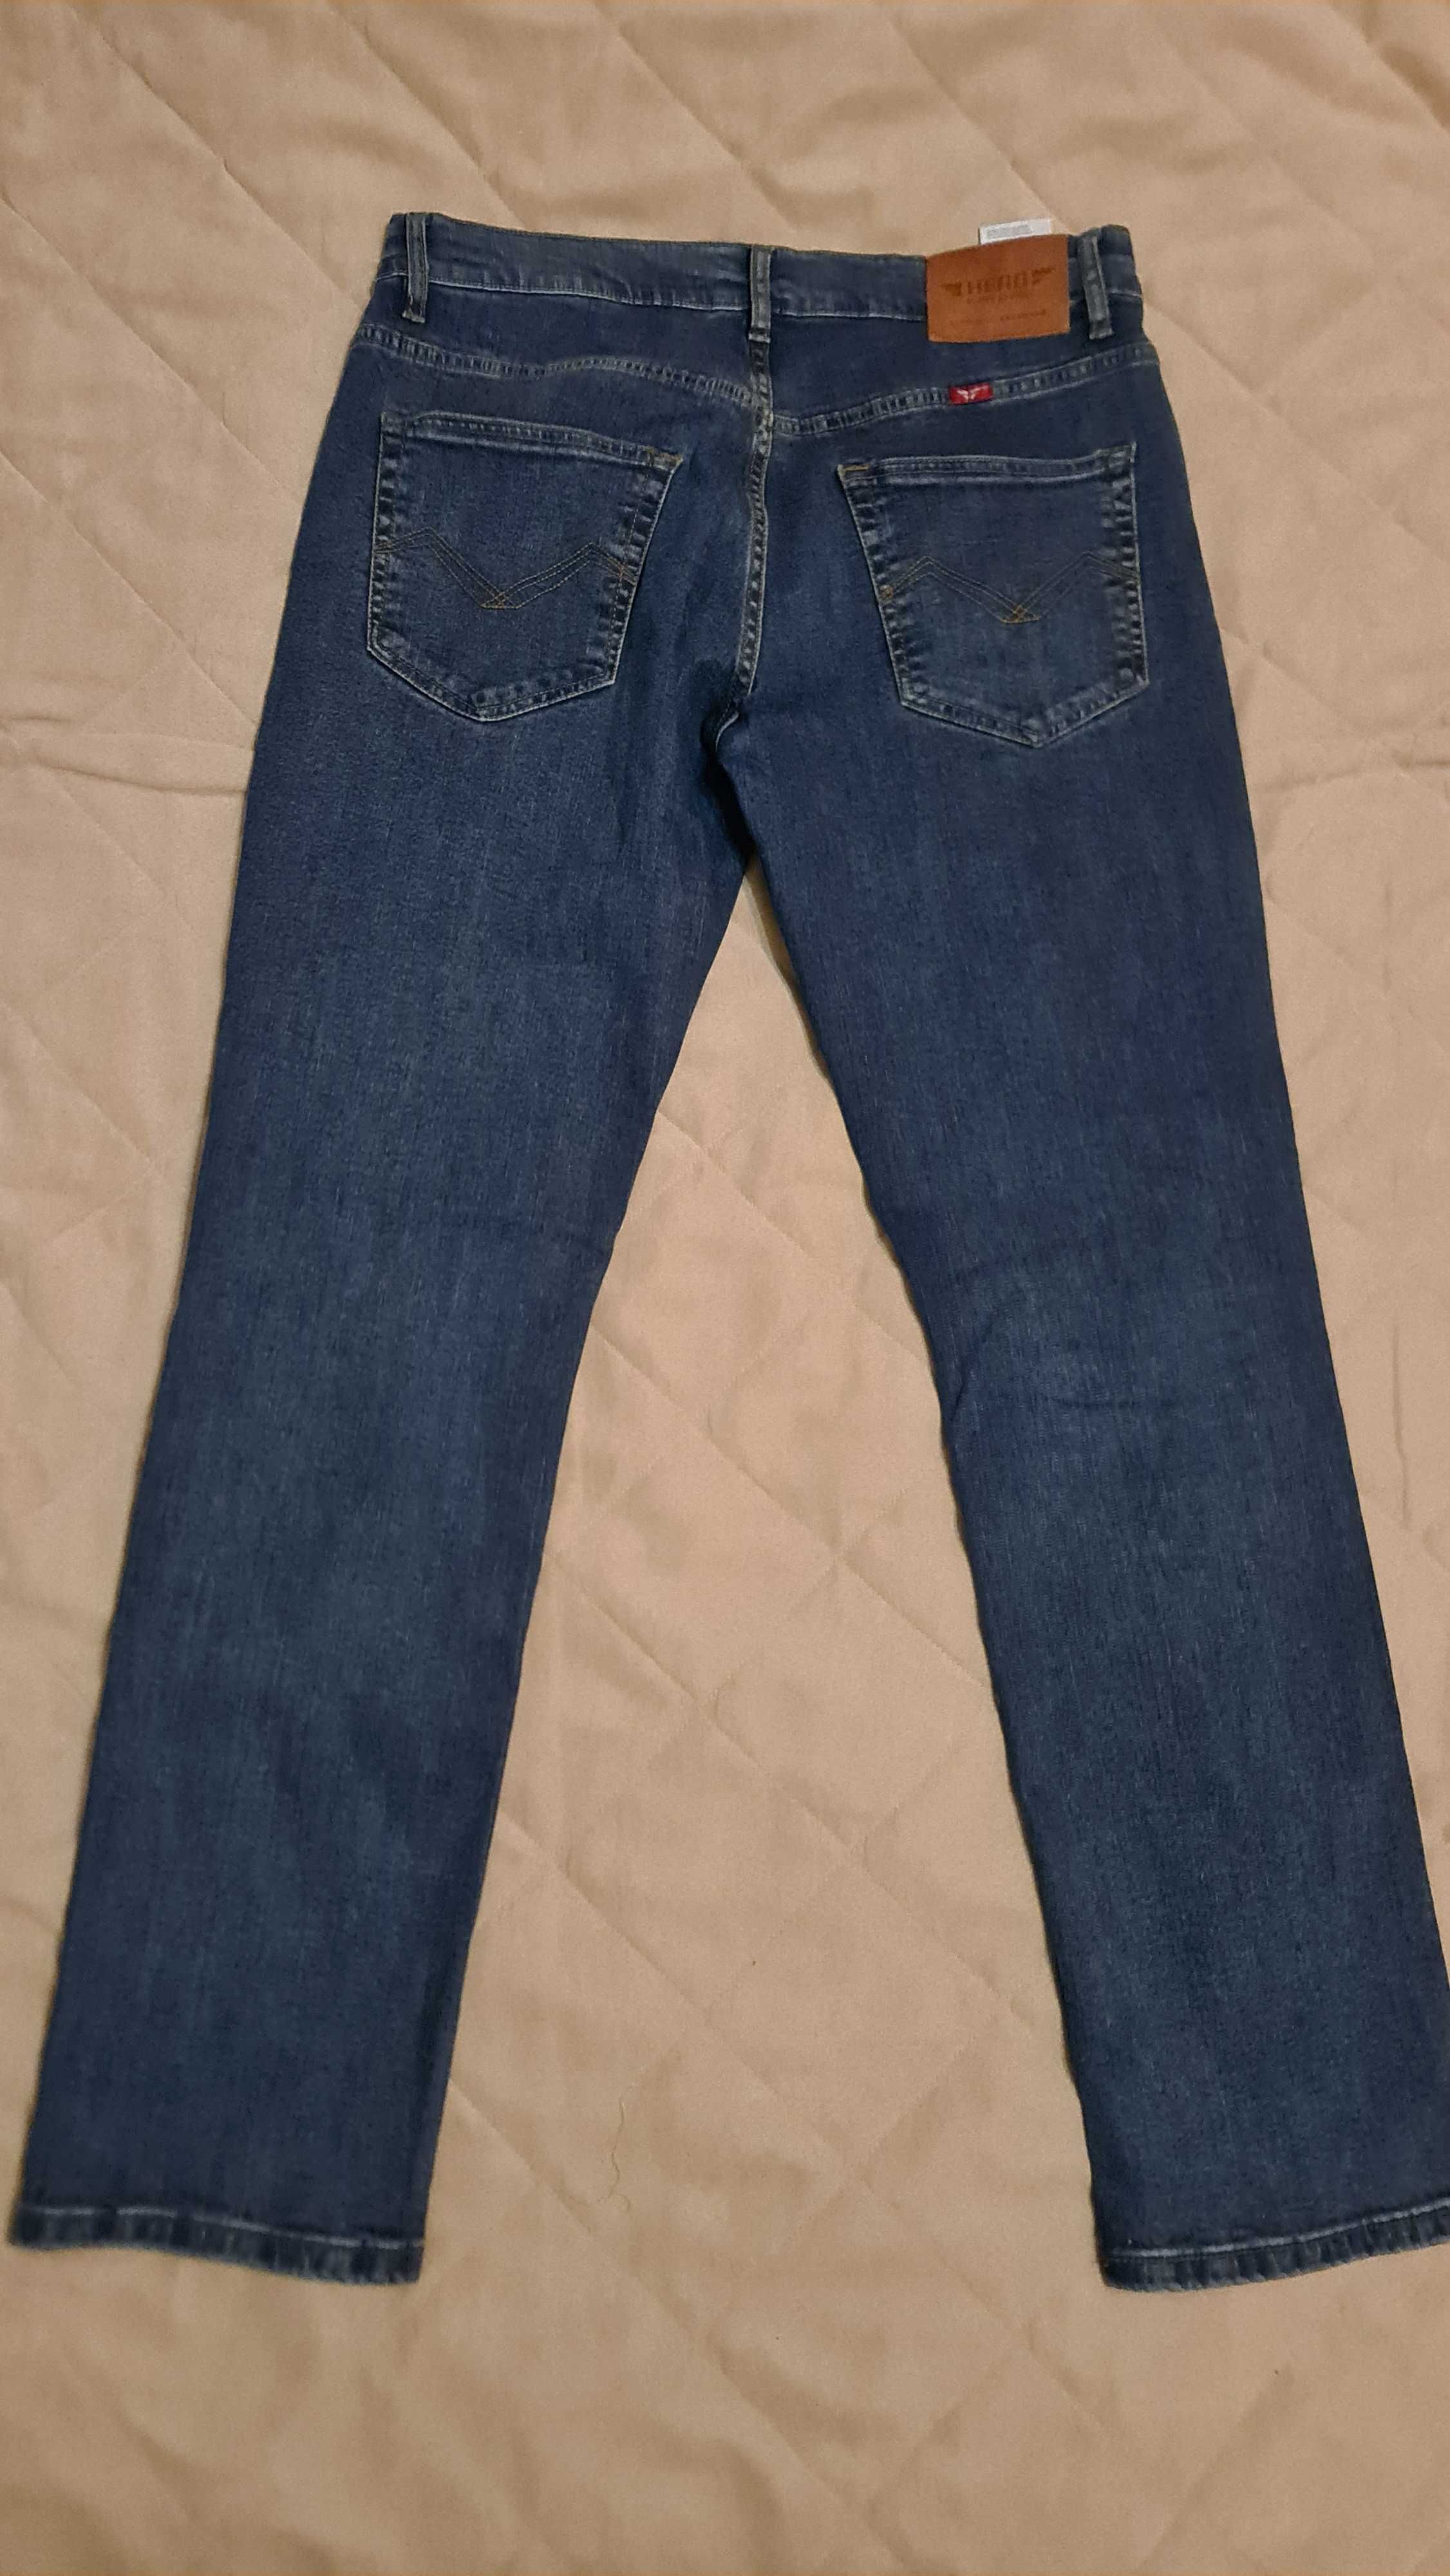 Spodnie męskie jeansowe HERO nowe W34 L34